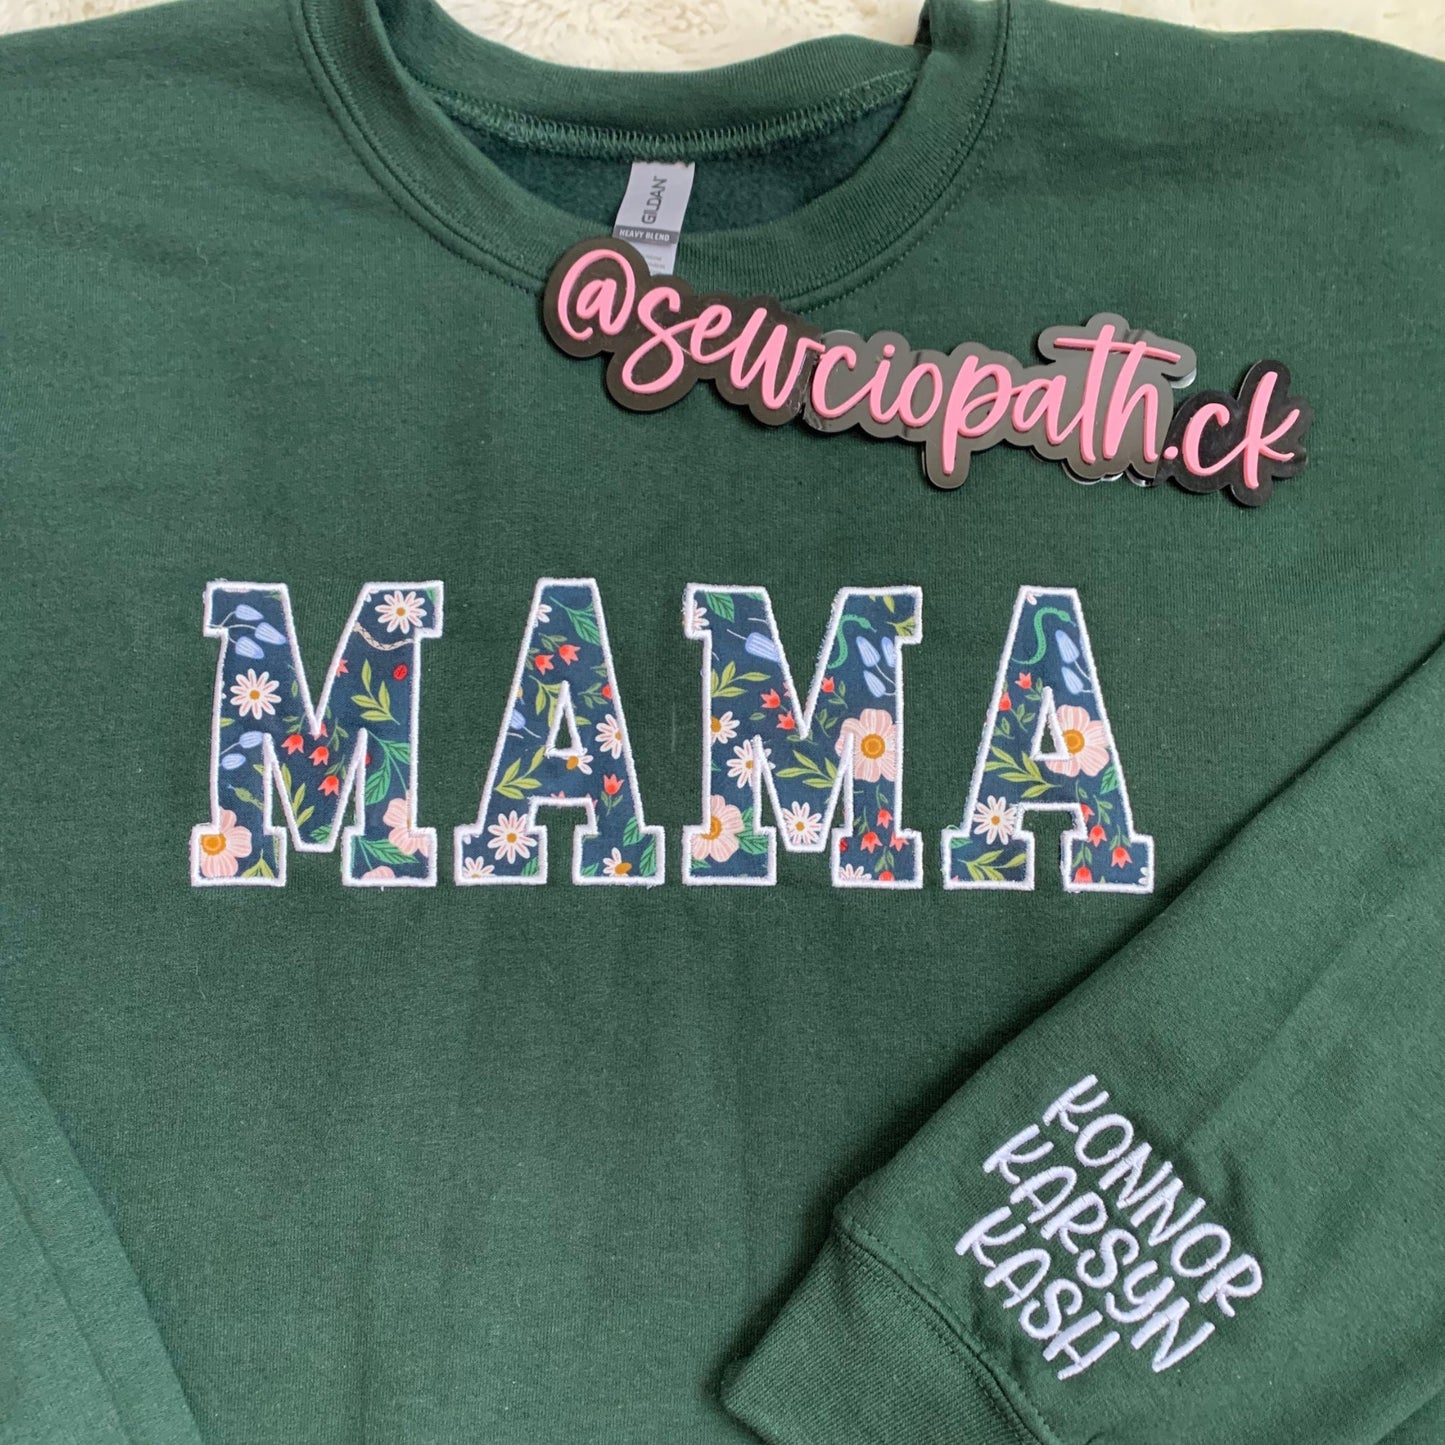 Mama Embroidered Sweatshirt